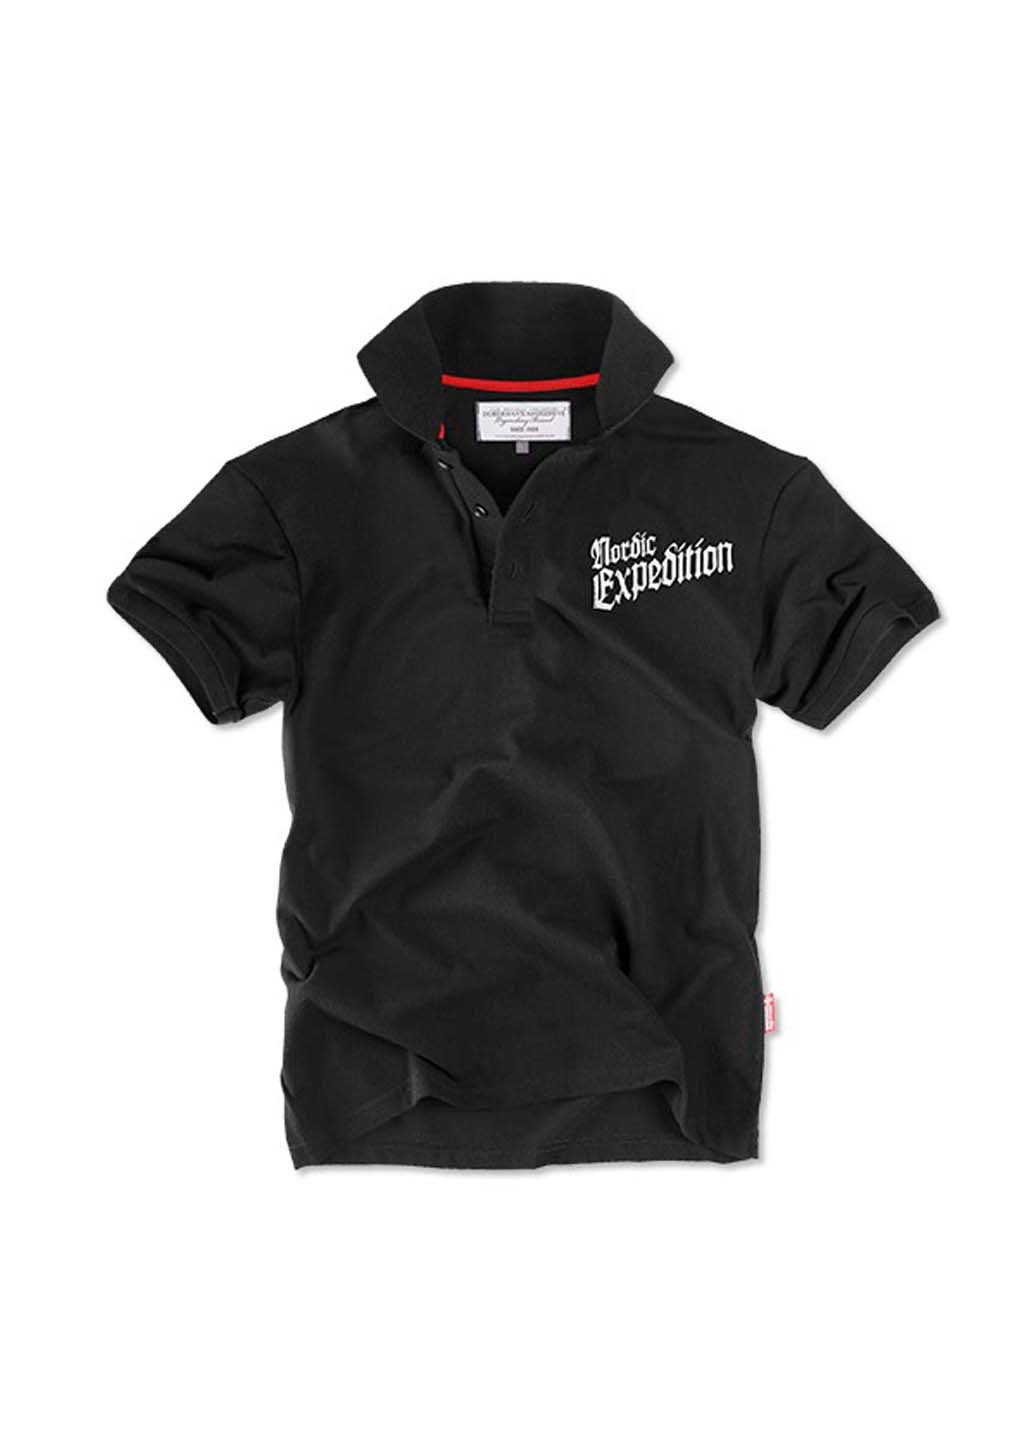 Черная футболка-футболка поло expedition tsp100bk для мужчин Dobermans Aggressive